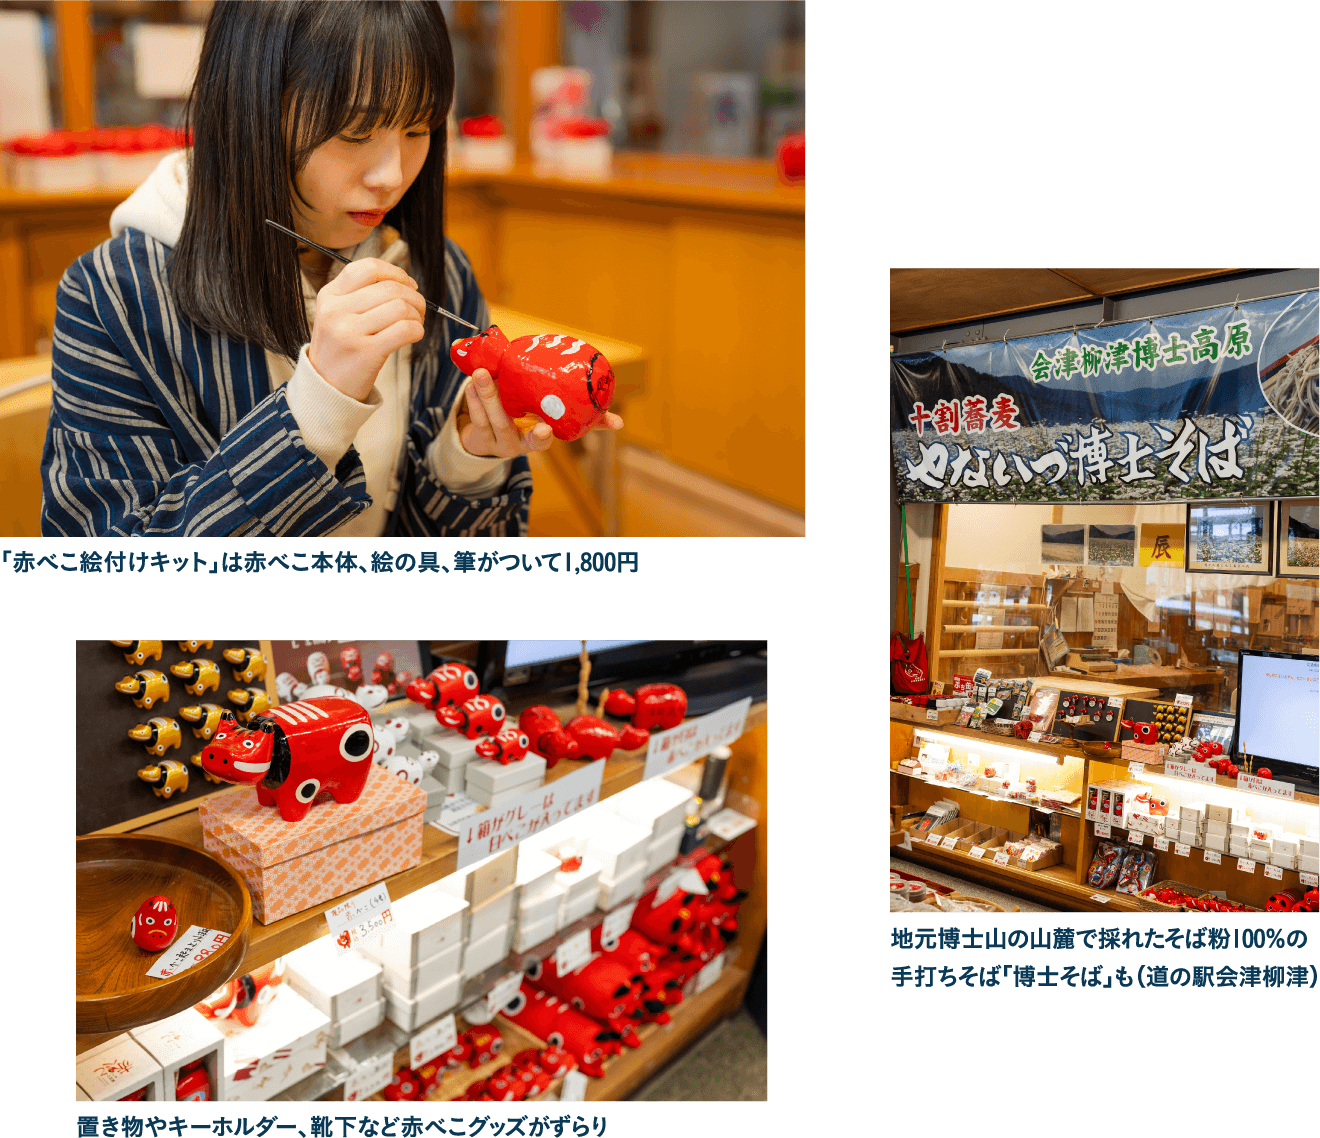 「道の駅会津柳津 観光物産館 清柳苑」で世界でひとつのオリジナル赤べこ作り